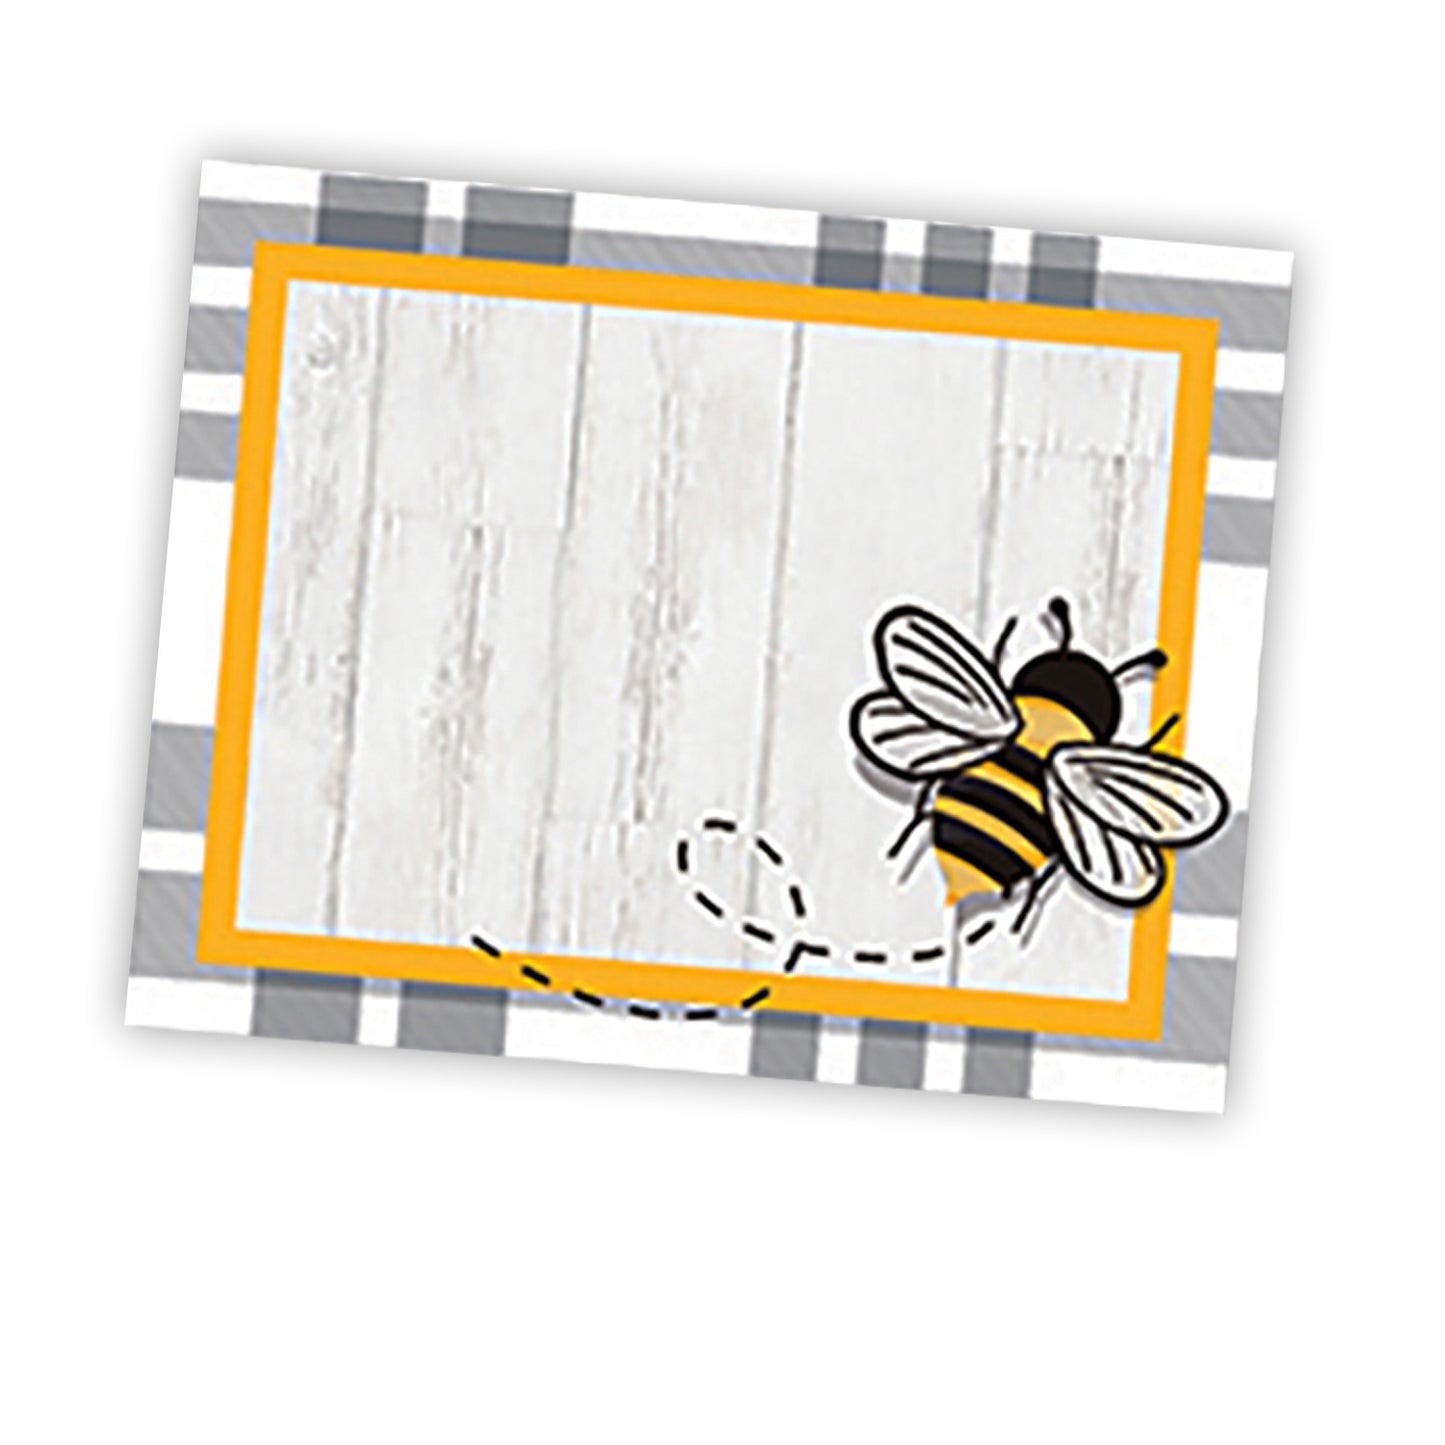 The Hive Self-Adhesive Name Tags, 40 Per Pack, 6 Packs